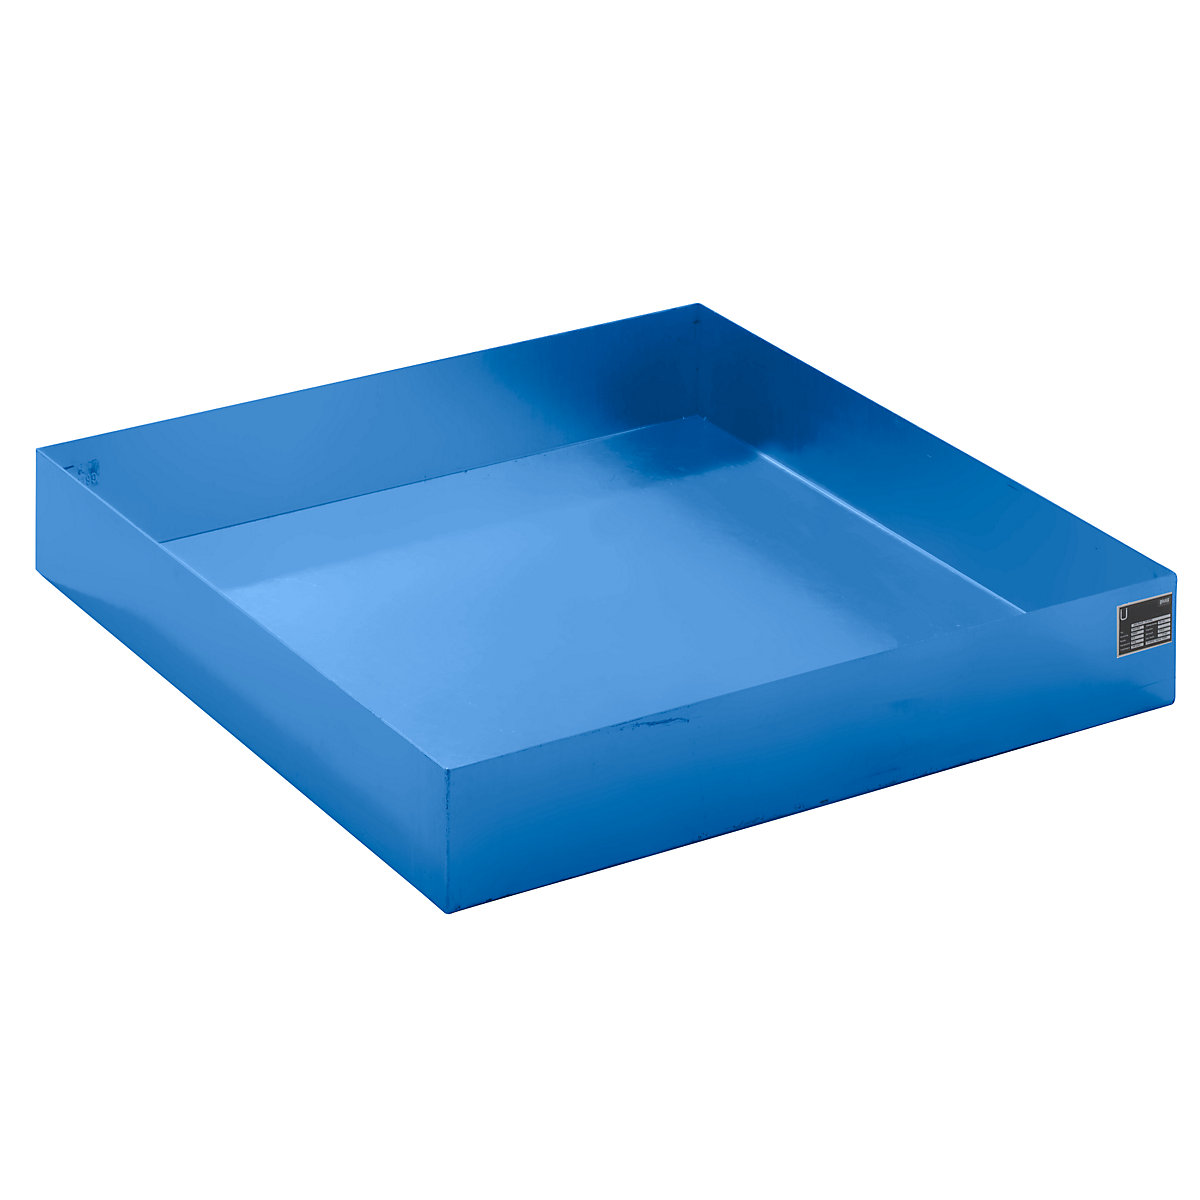 Prihvatno korito za palete, DxŠxV 1200 x 1200 x 185 mm, u plavoj boji RAL 5012-5